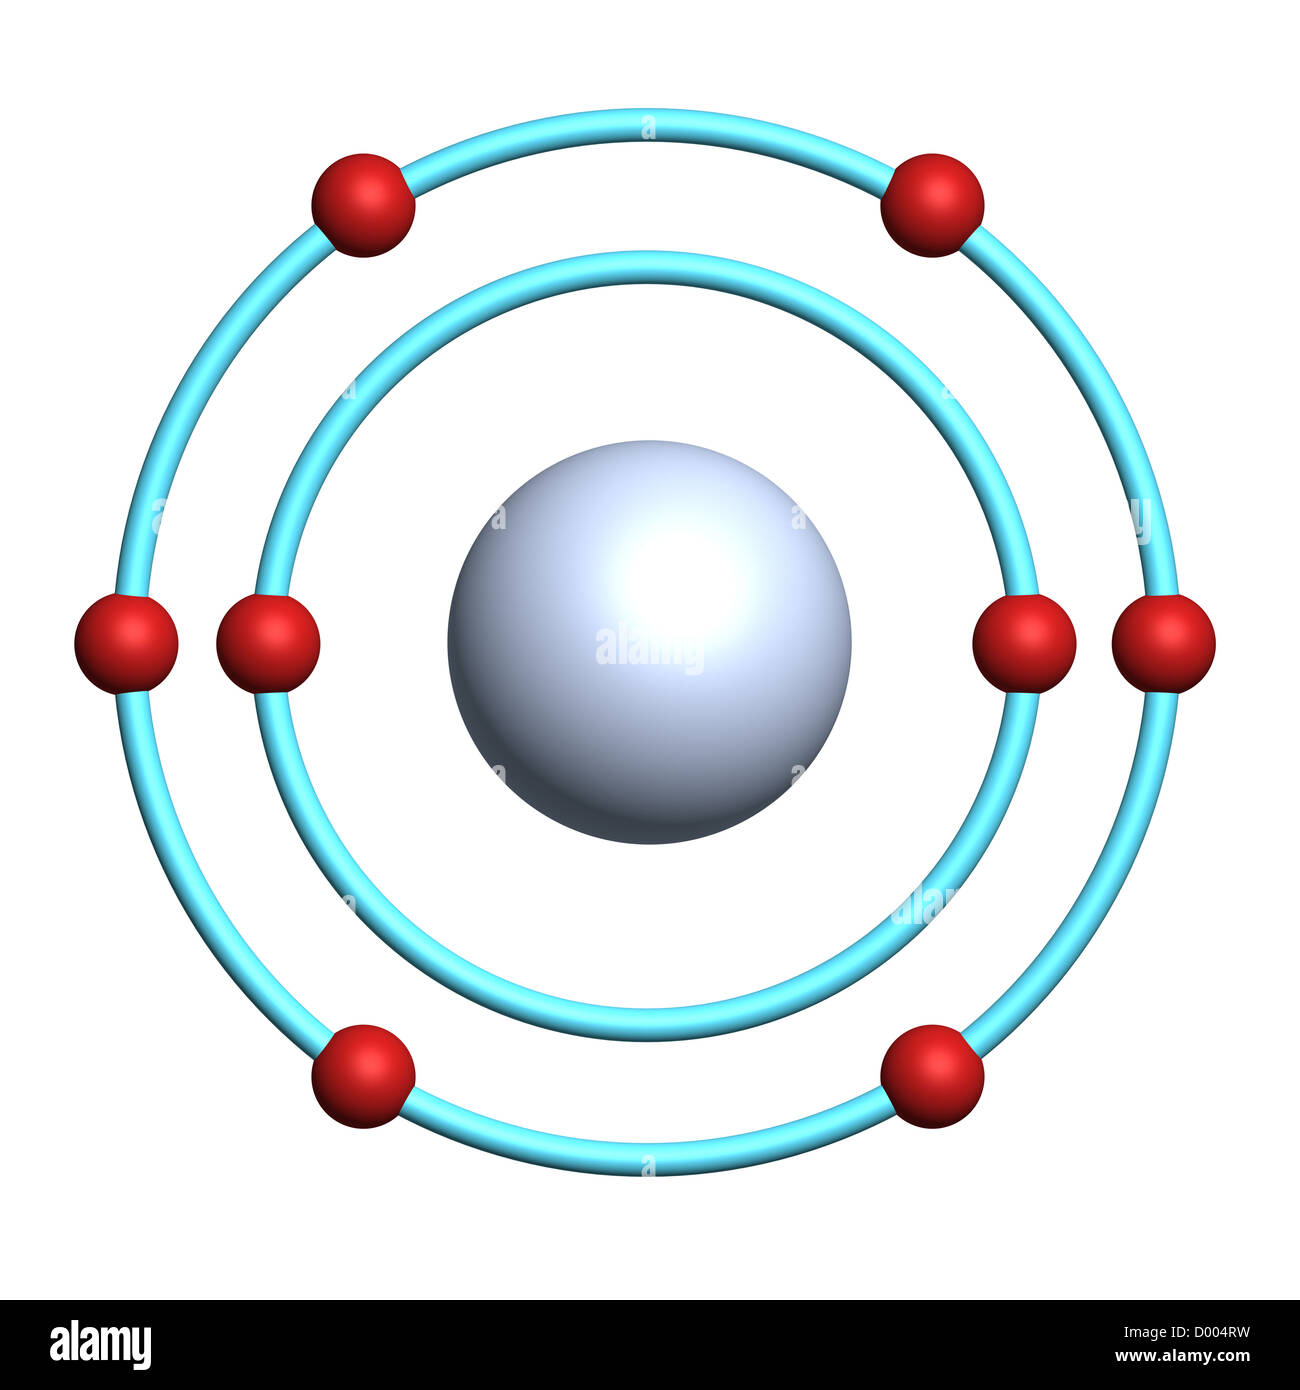 https://c8.alamy.com/compde/d004rw/sauerstoff-atom-auf-weissem-hintergrund-d004rw.jpg